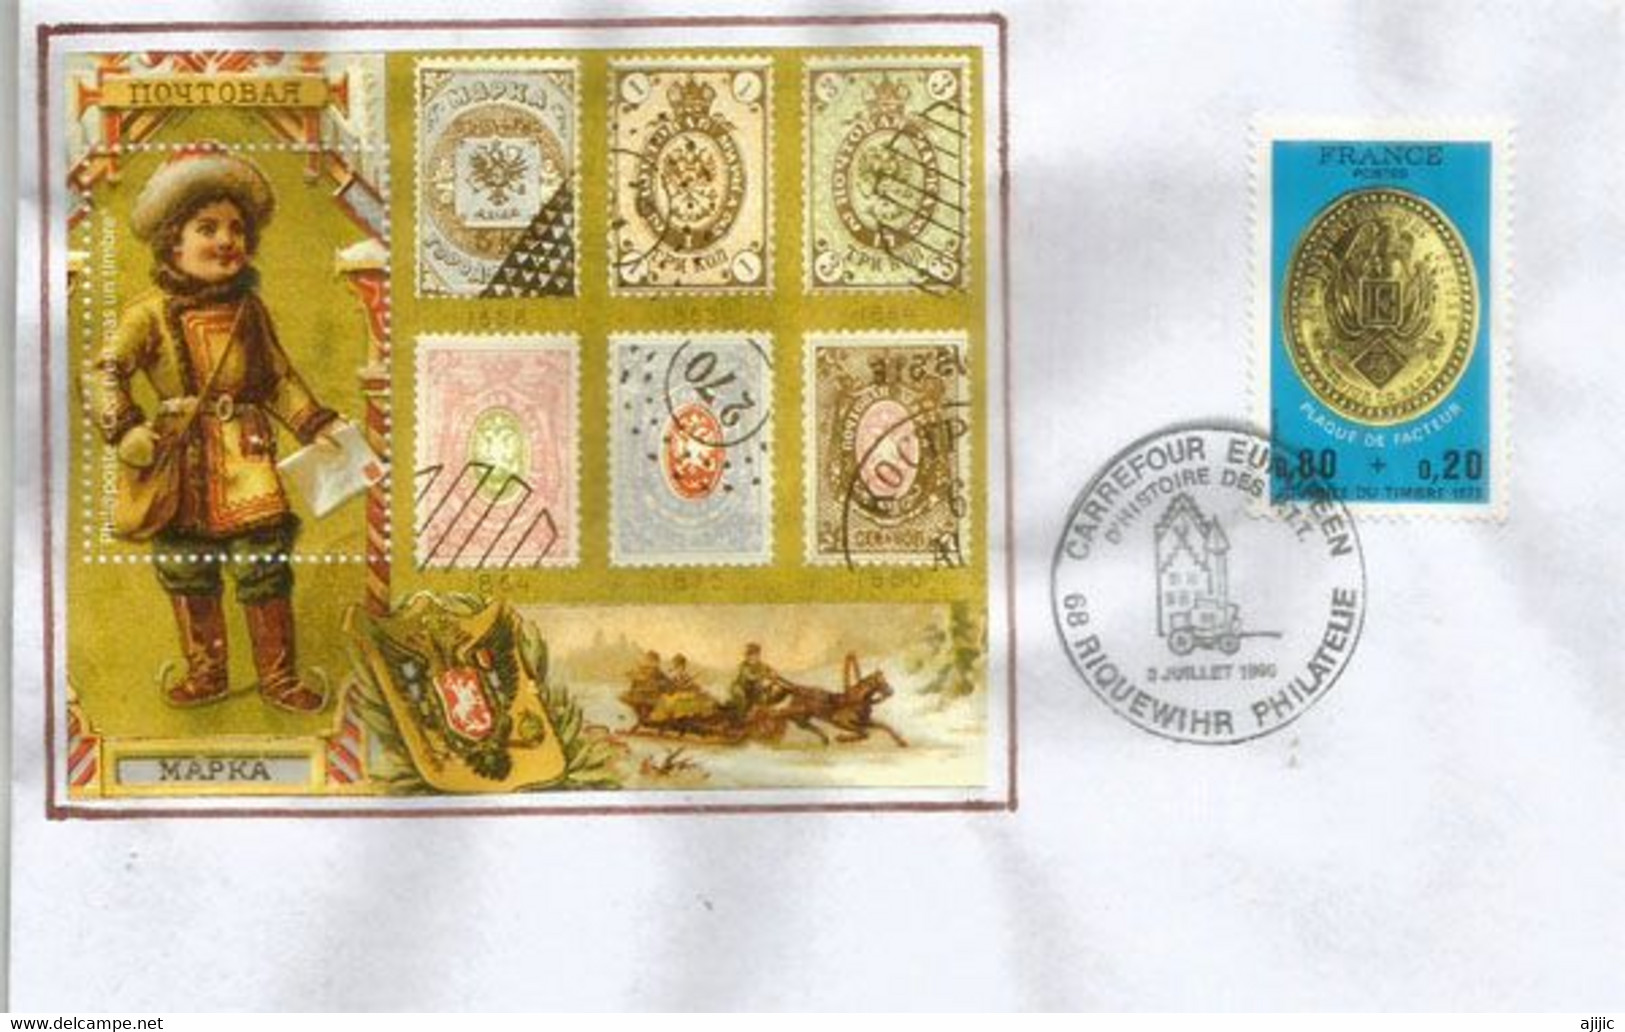 Postal Service History France With The Russian Empire, On Cover "Carrefour Europeen" Riquewihr. France. (Vignette) - Variétés & Curiosités